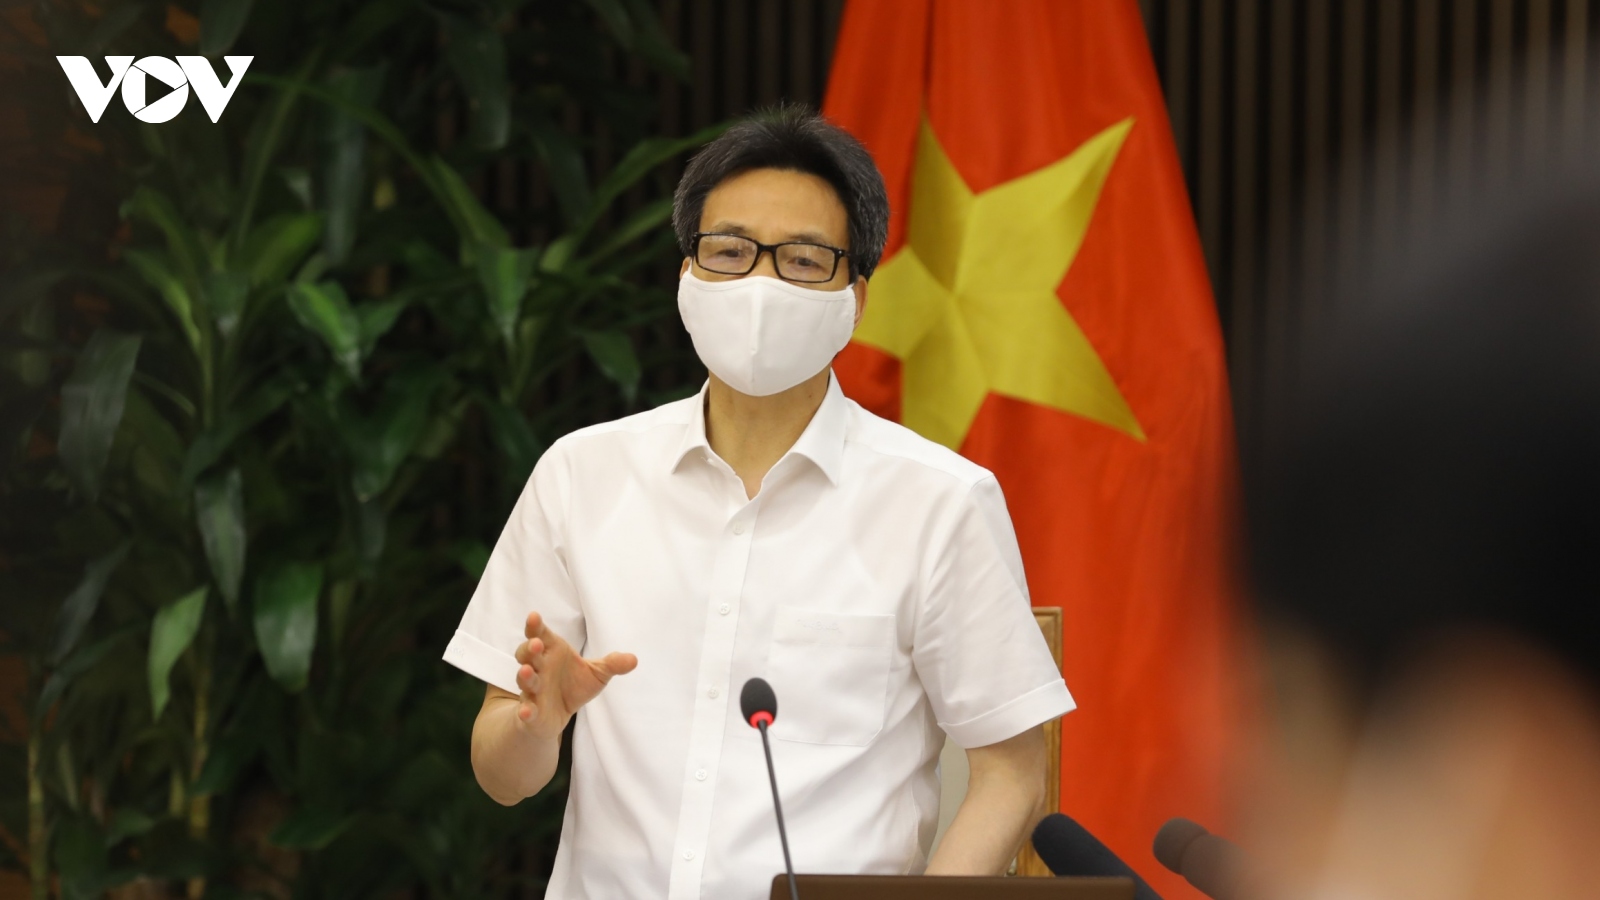 Phó Thủ tướng Vũ Đức Đam: Bắc Giang, Bắc Ninh “không để đứt gãy chuỗi sản xuất”